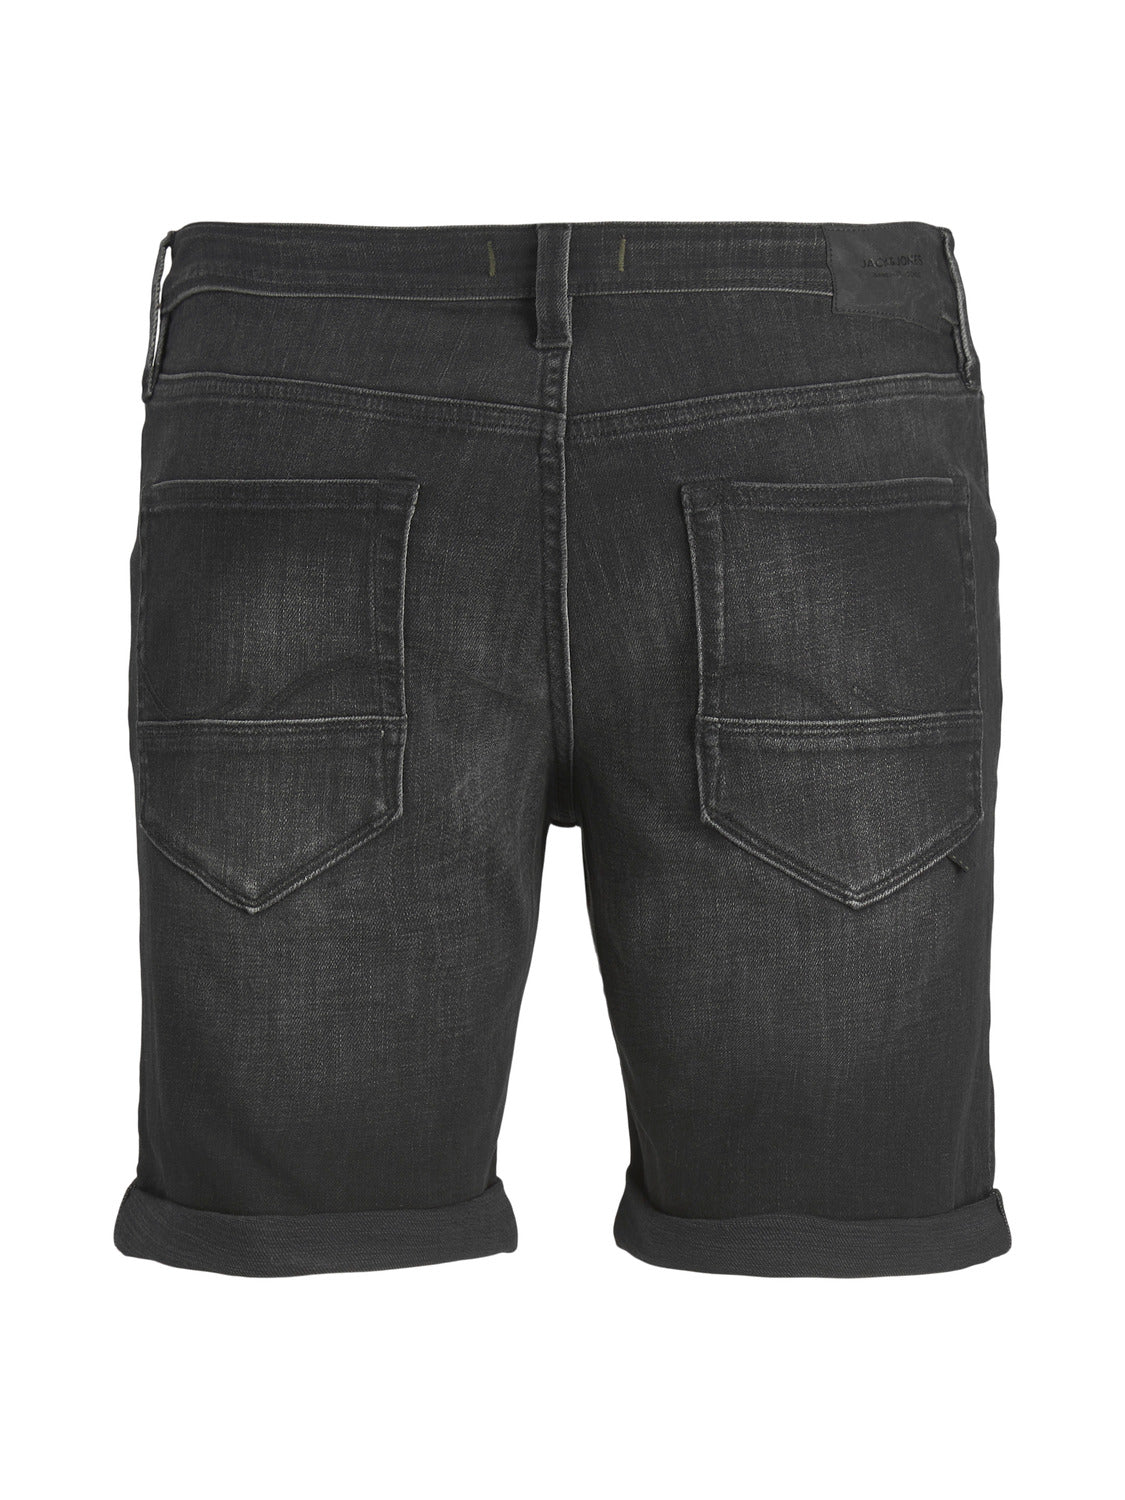 JJIRICK Shorts - Black Denim